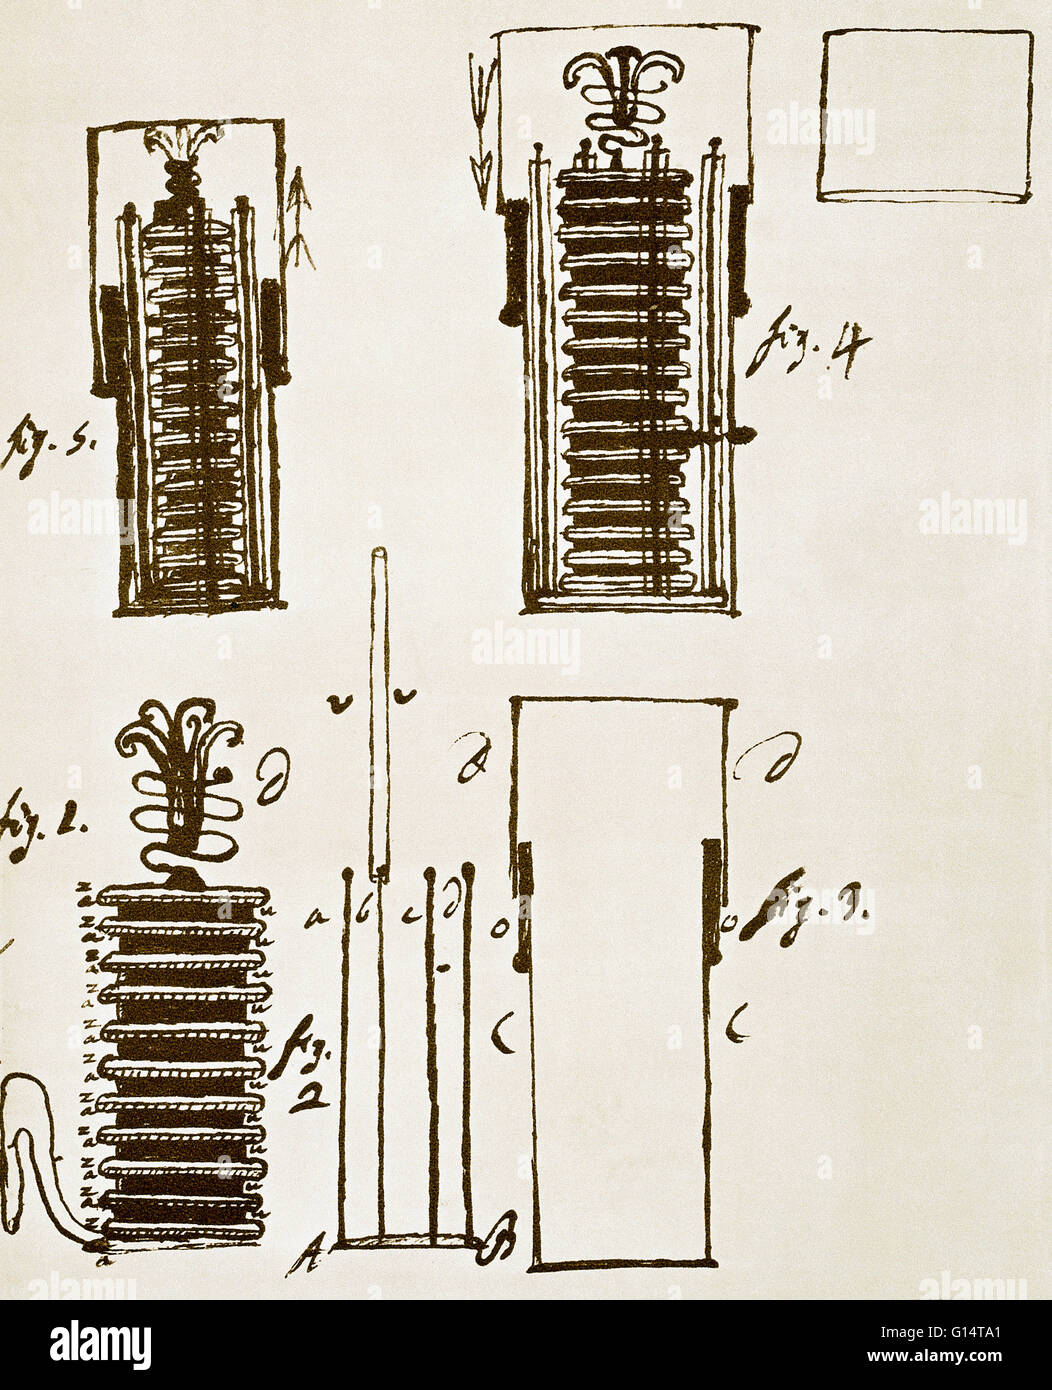 Eine Zeichnung von Erfinder Alessandro Volta (1745-1827), der ersten elektrischen Batterie, genannt der "Haufen" oder die Voltaic Batterie. Dies war das erste Instrument in der Lage, einen stetigen elektrischen Strom zu produzieren. Nach der Lektüre über die Torpedo-Fische, die liefert Stockfoto